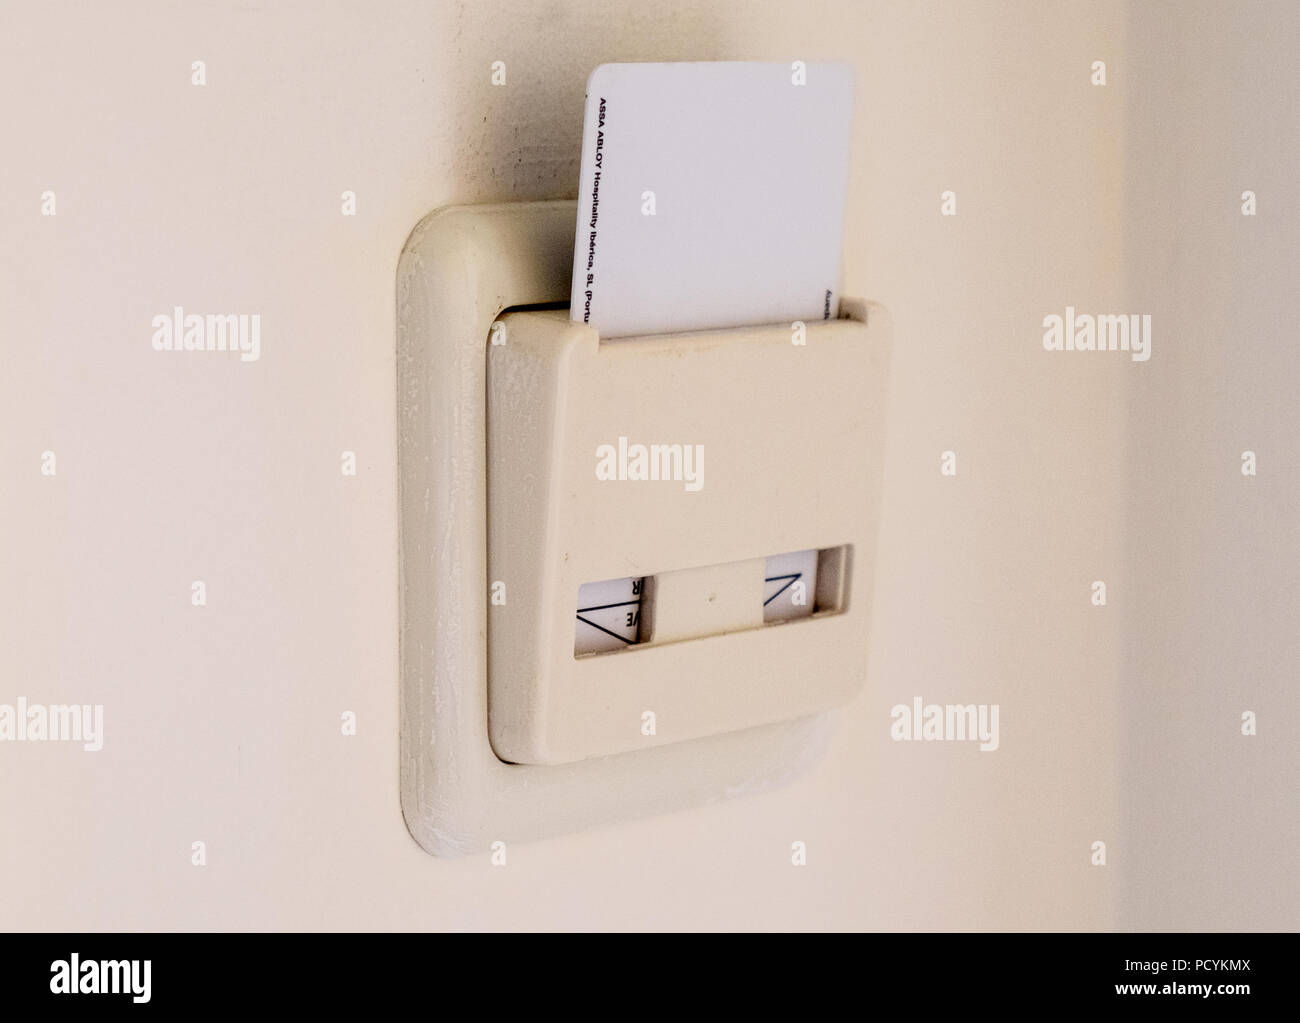 Hotel key card collocato in una camera per accendere la potenza Foto Stock